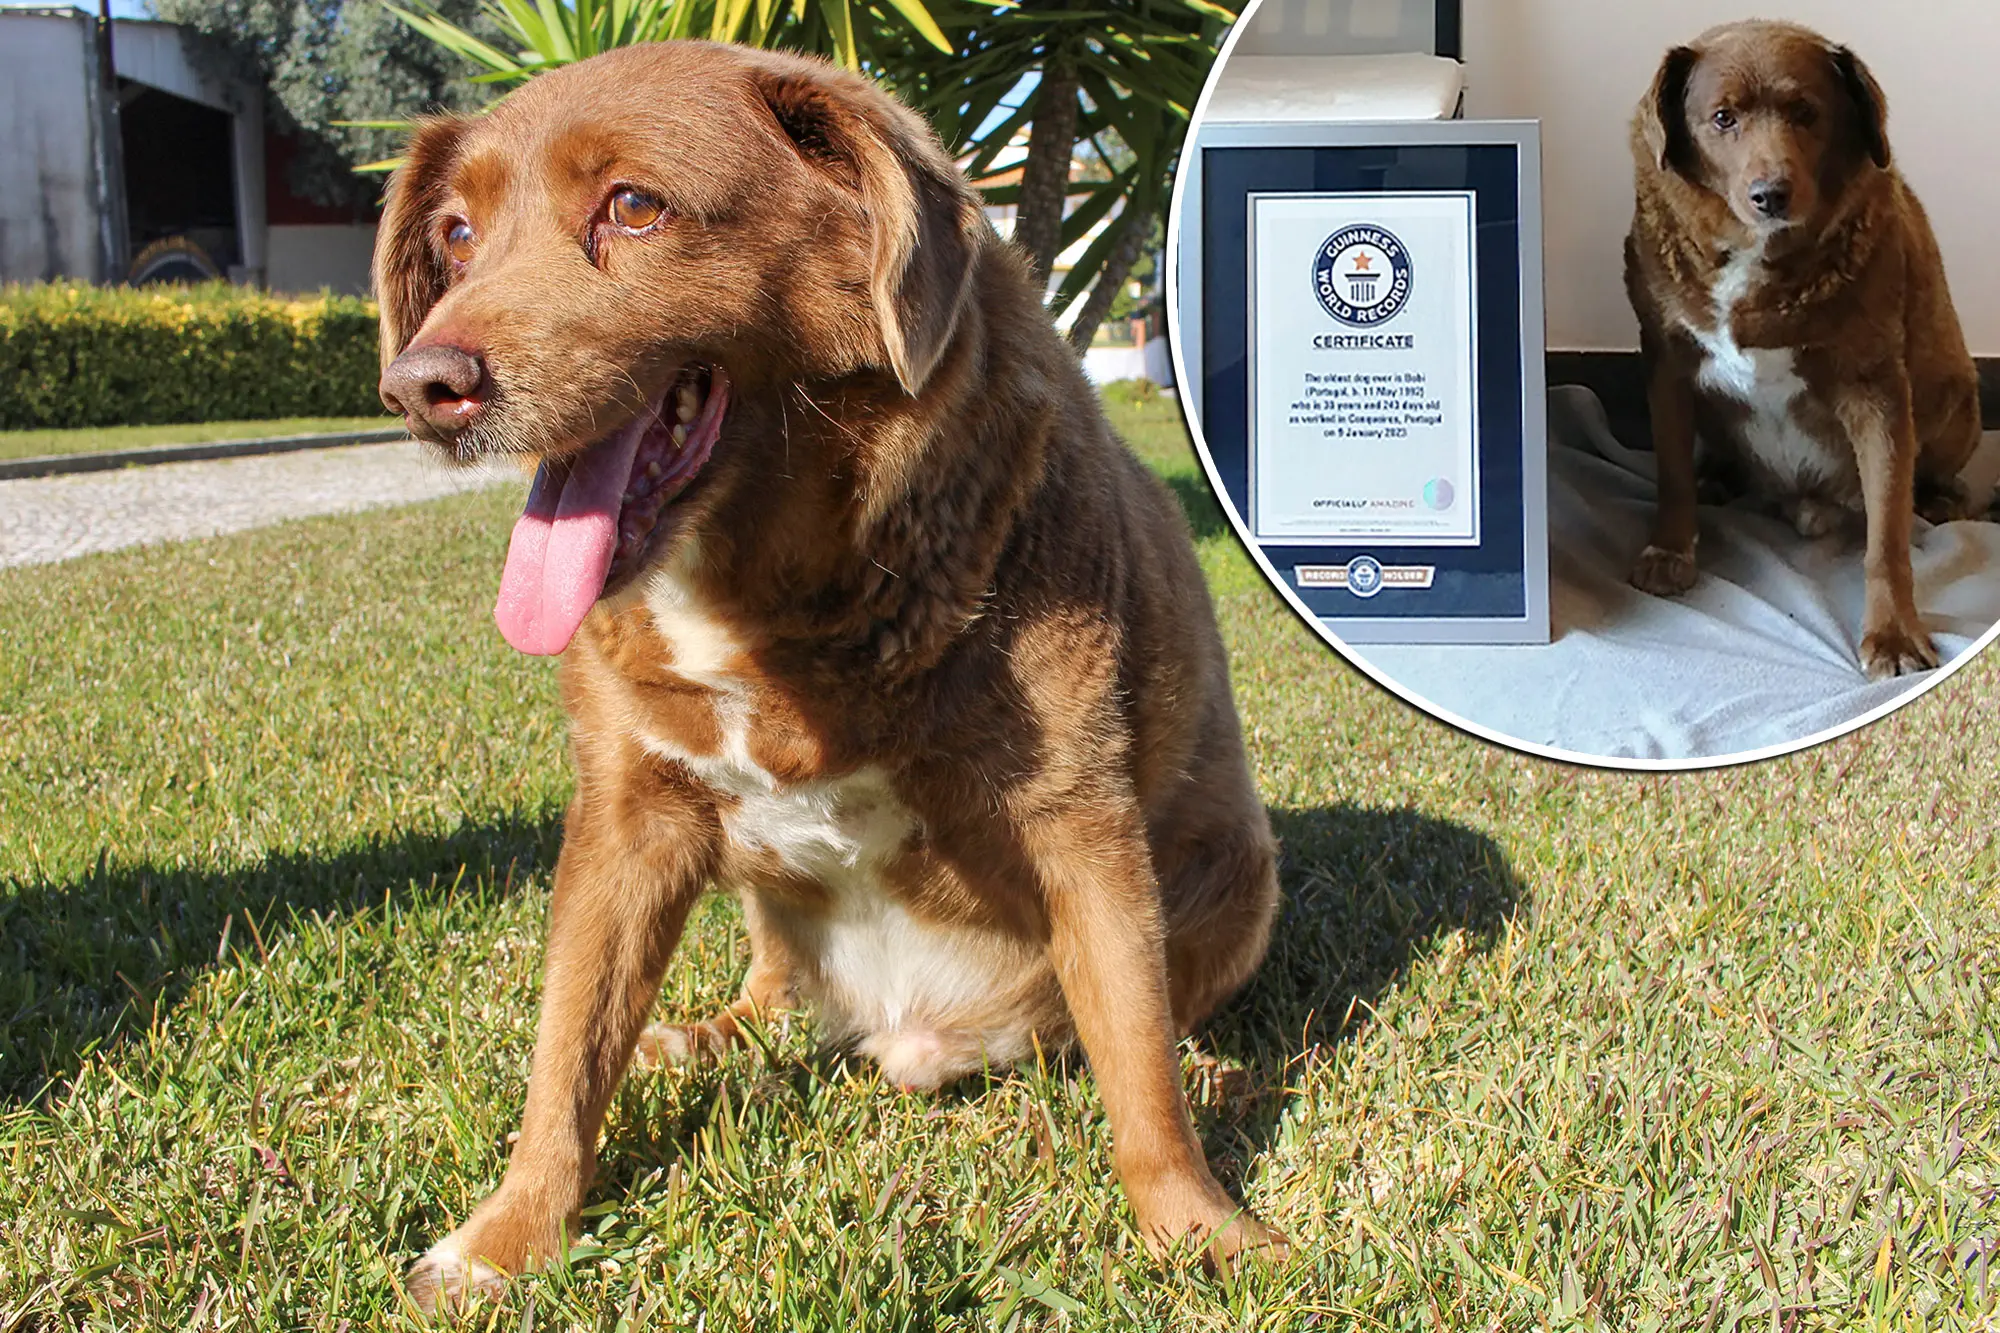 A ishte qeni më i vjetër në botë, një mashtrim? Rekordet Botërore Guinness pezullojnë titullin dhe nisin hetimin